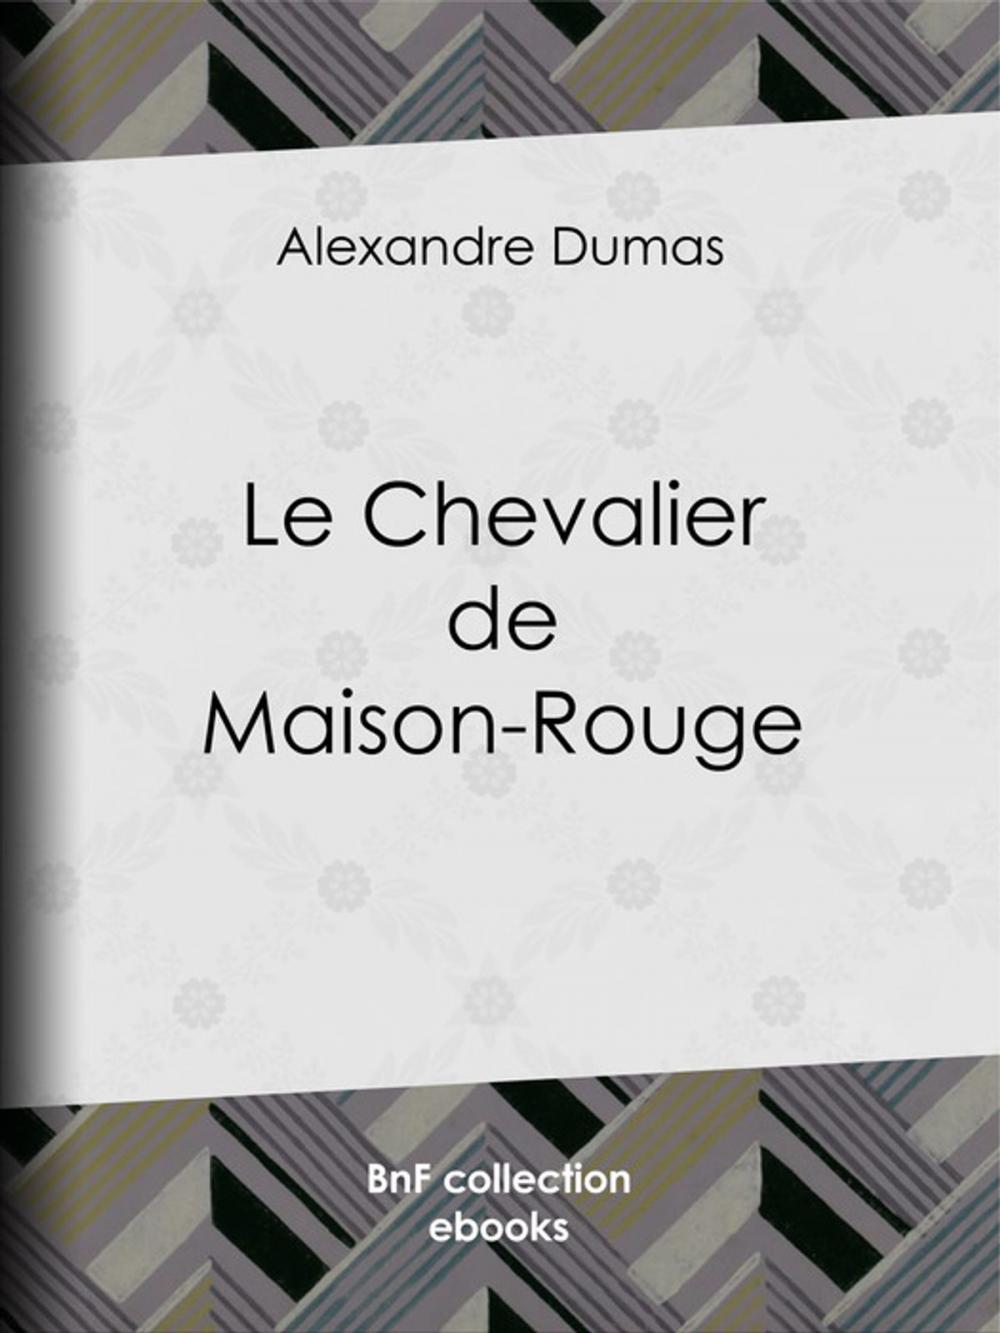 Big bigCover of Le Chevalier de Maison-Rouge